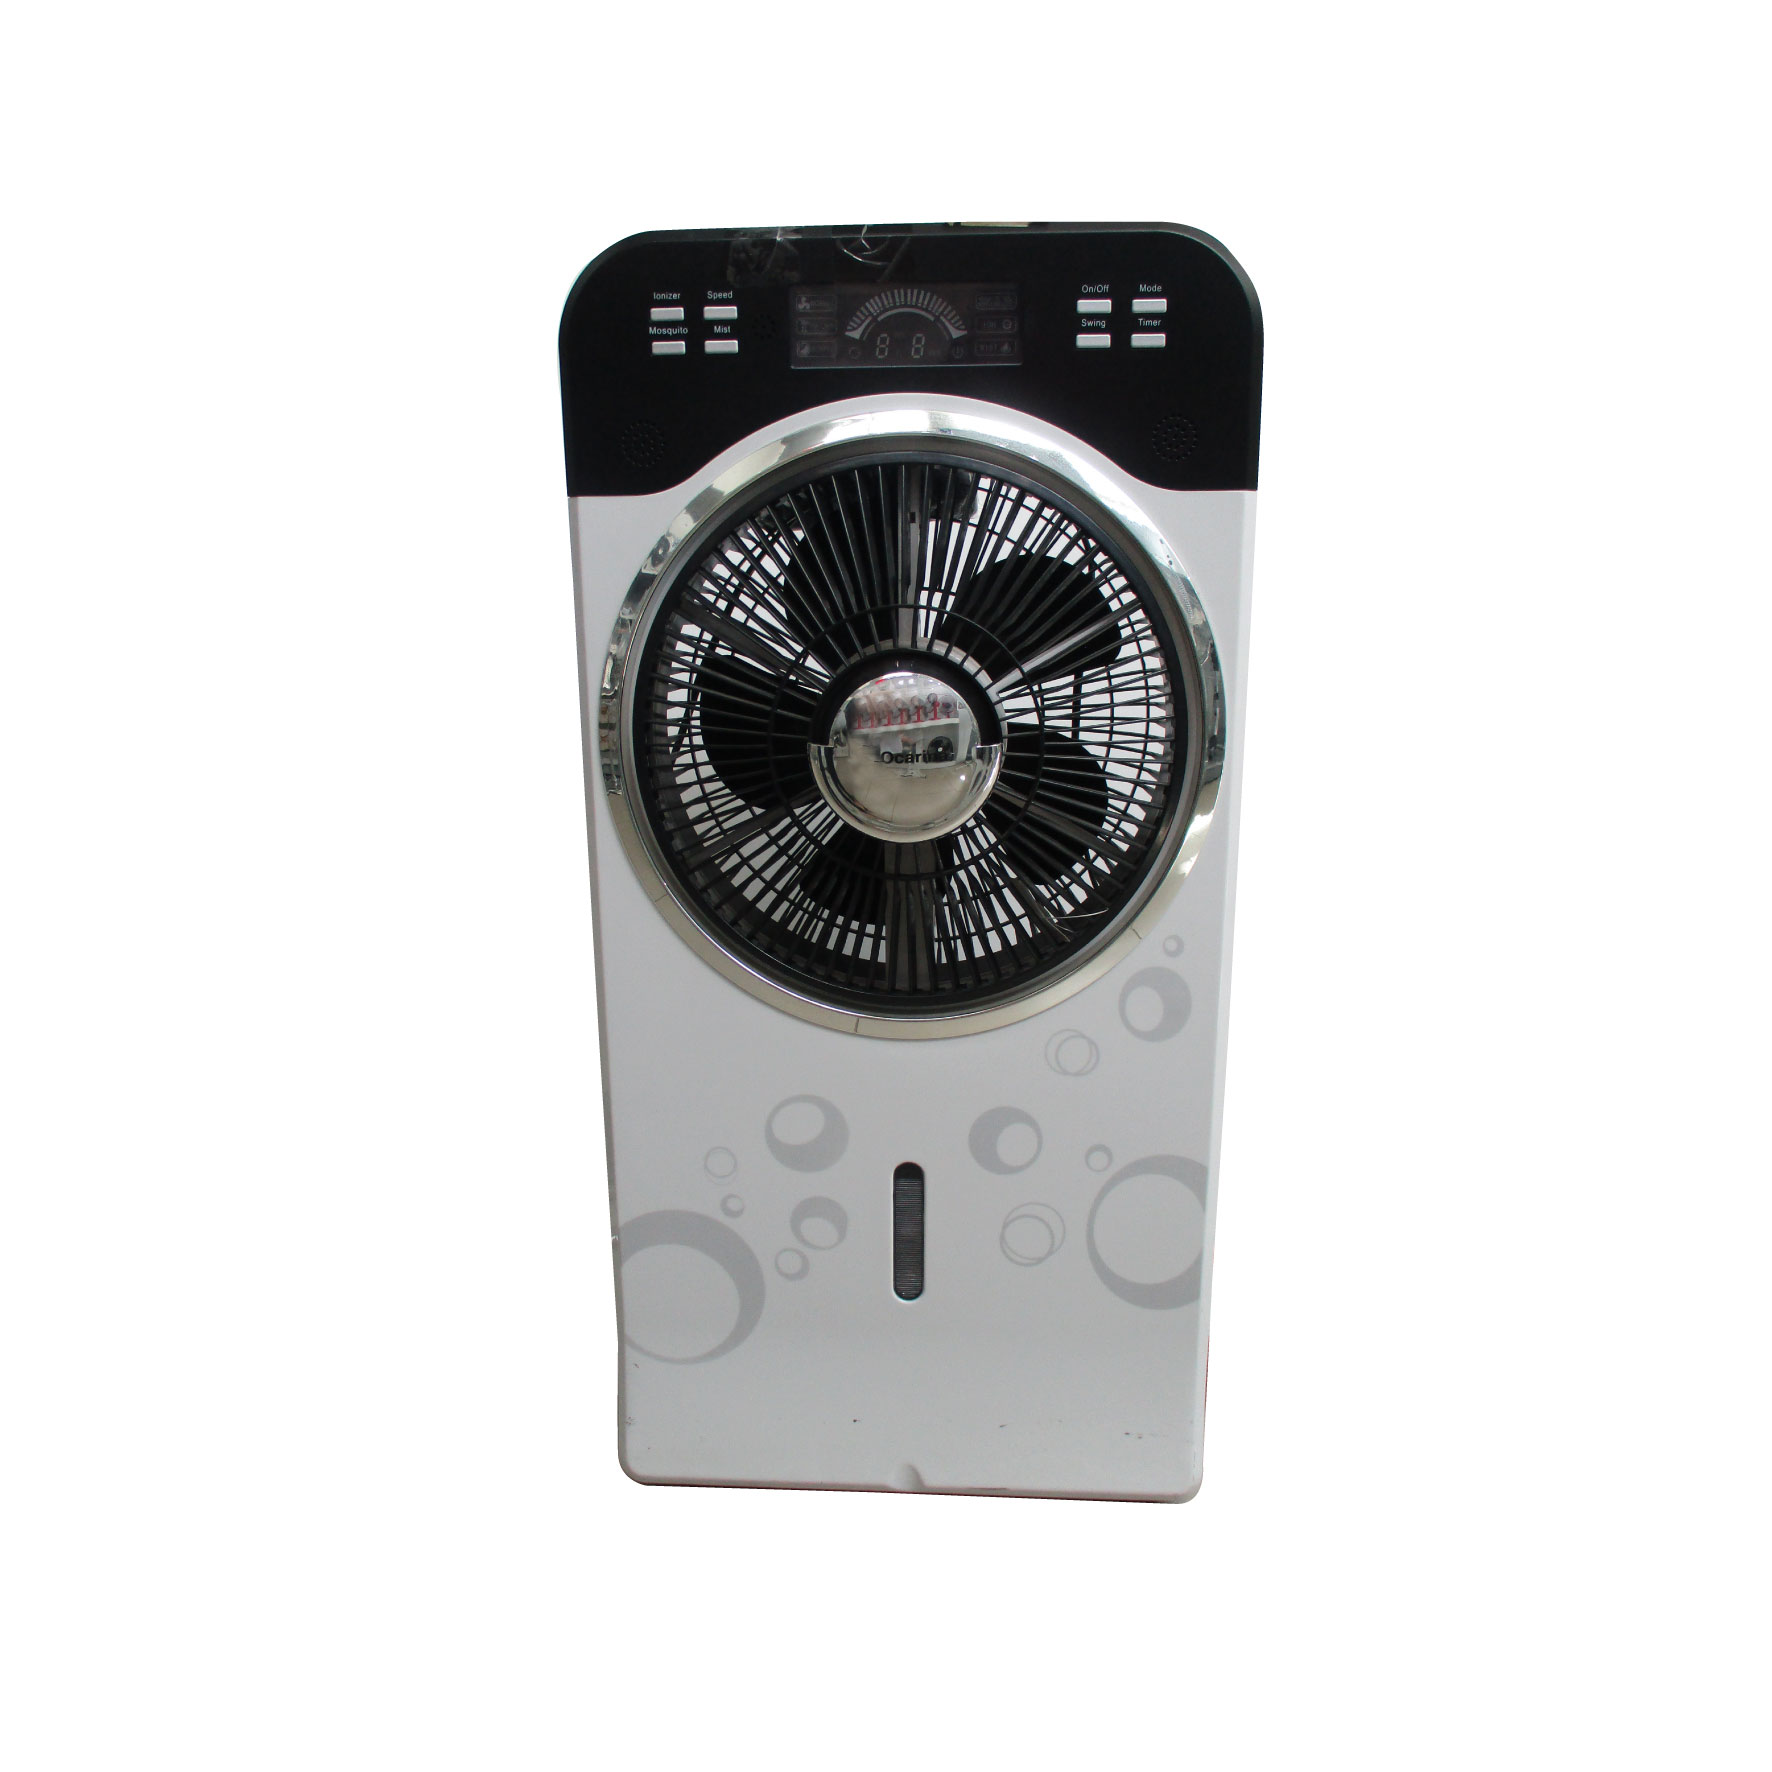 O Carina Mist Digital Fan 12-Inch (Remote Control-Timer-3 Speeds), 80W, FVWFY33A12